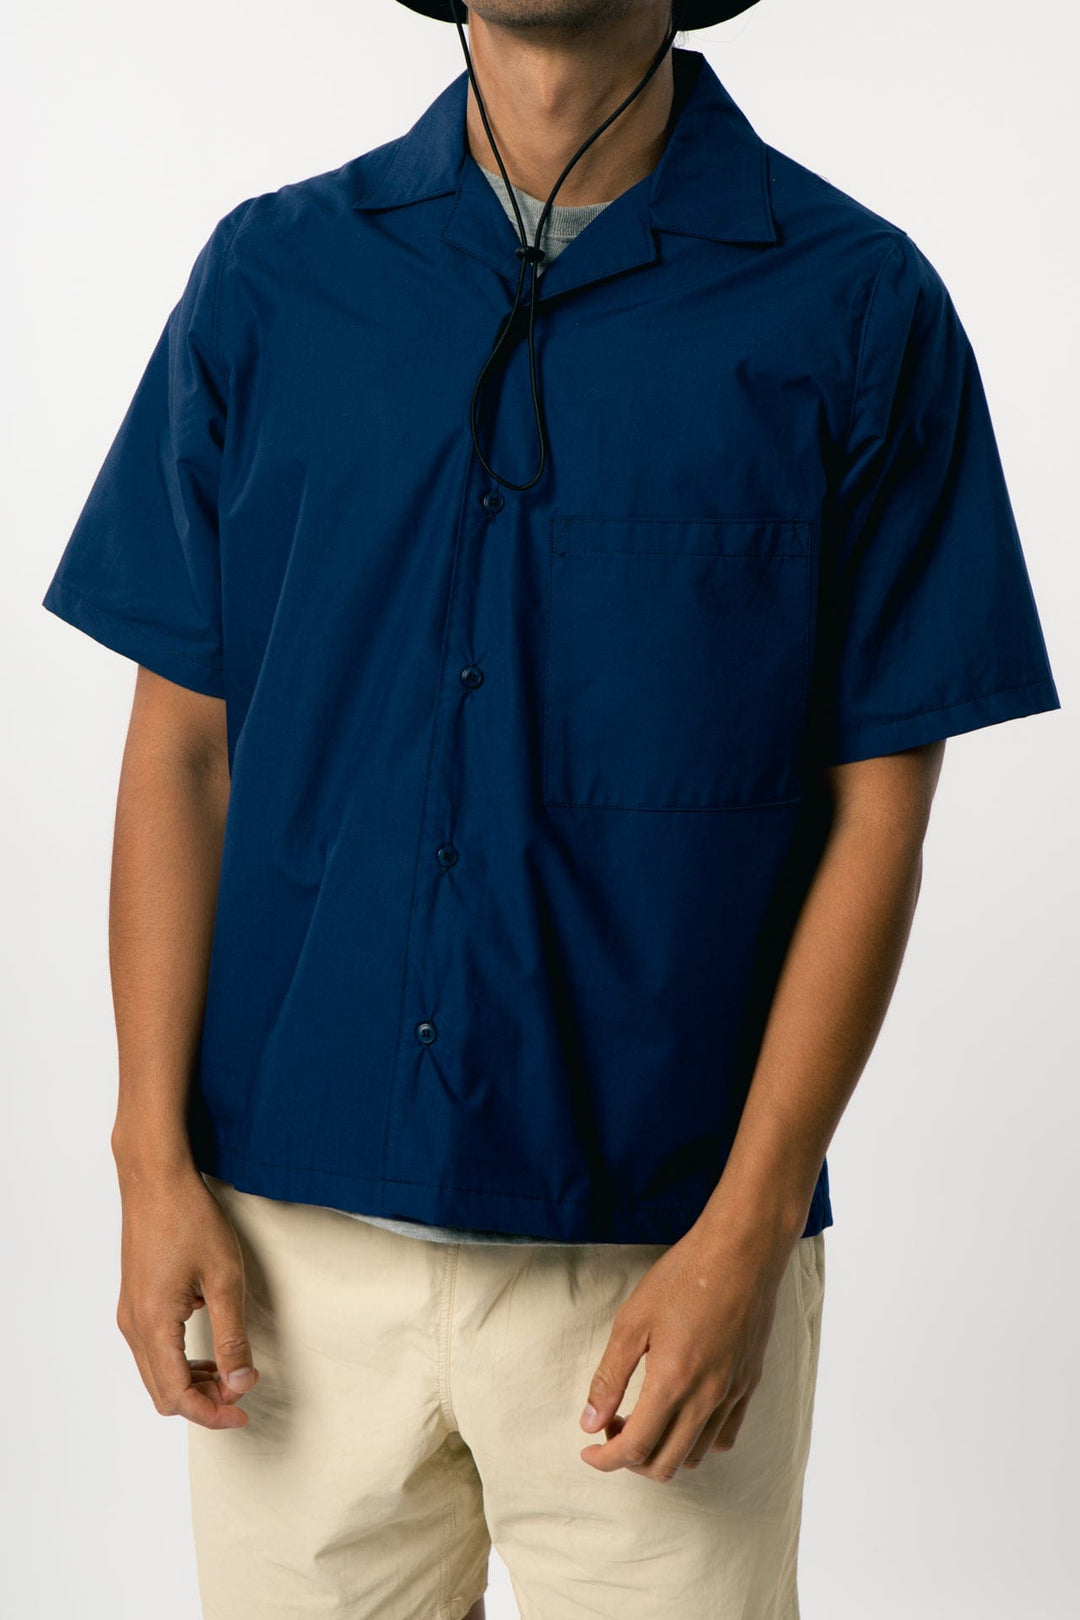 Ezra Shirt